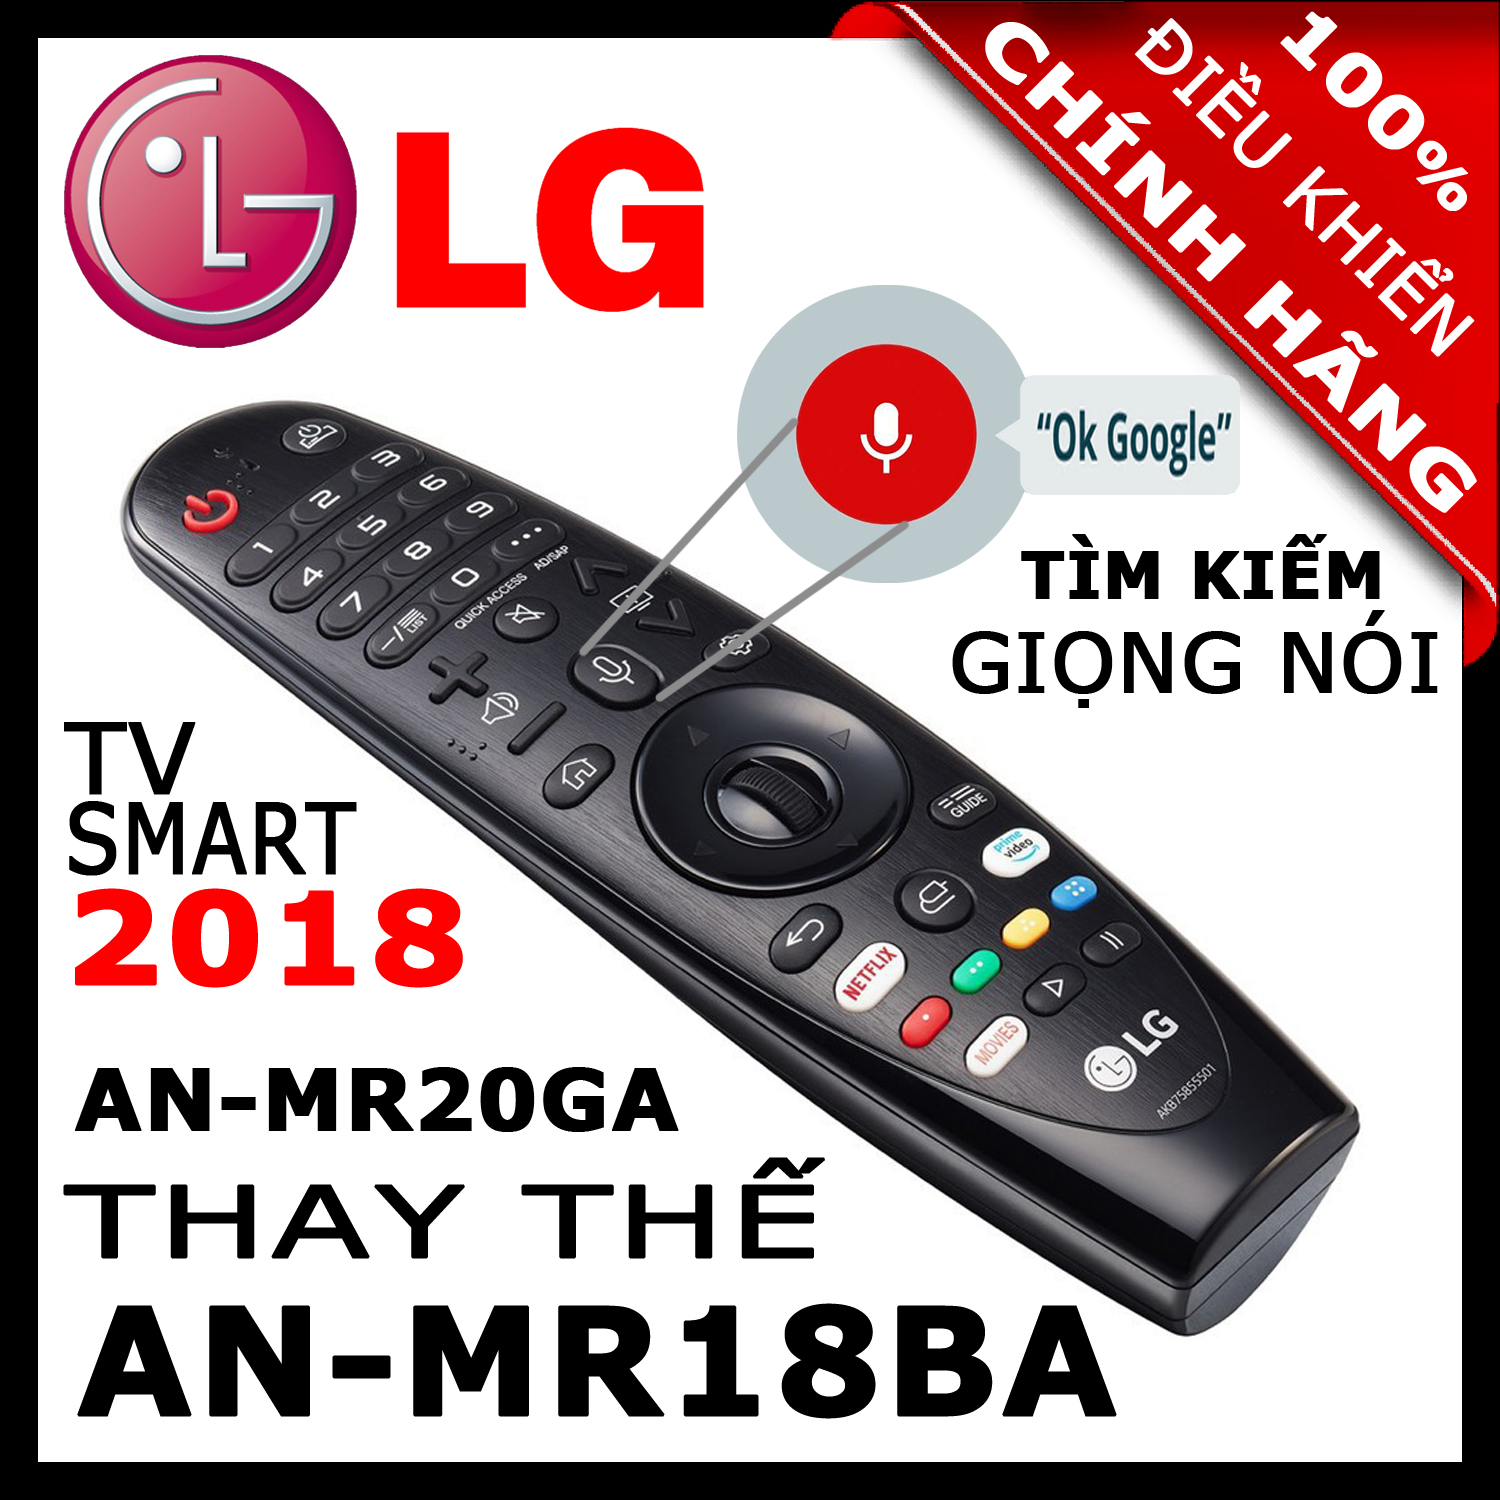 ĐIỀU KHIỂN Remote Tivi LG MR20GA thay thế MR19BA và MR18BA và MR650A có Giọng nói Chuột bay cho tivi LG 2020 2019 2018 2017 Magic Remote AN-MR20GA mã số AKB75855501 HÀNG XỊN. Remote cho tivi LG sản xuất năm 2018